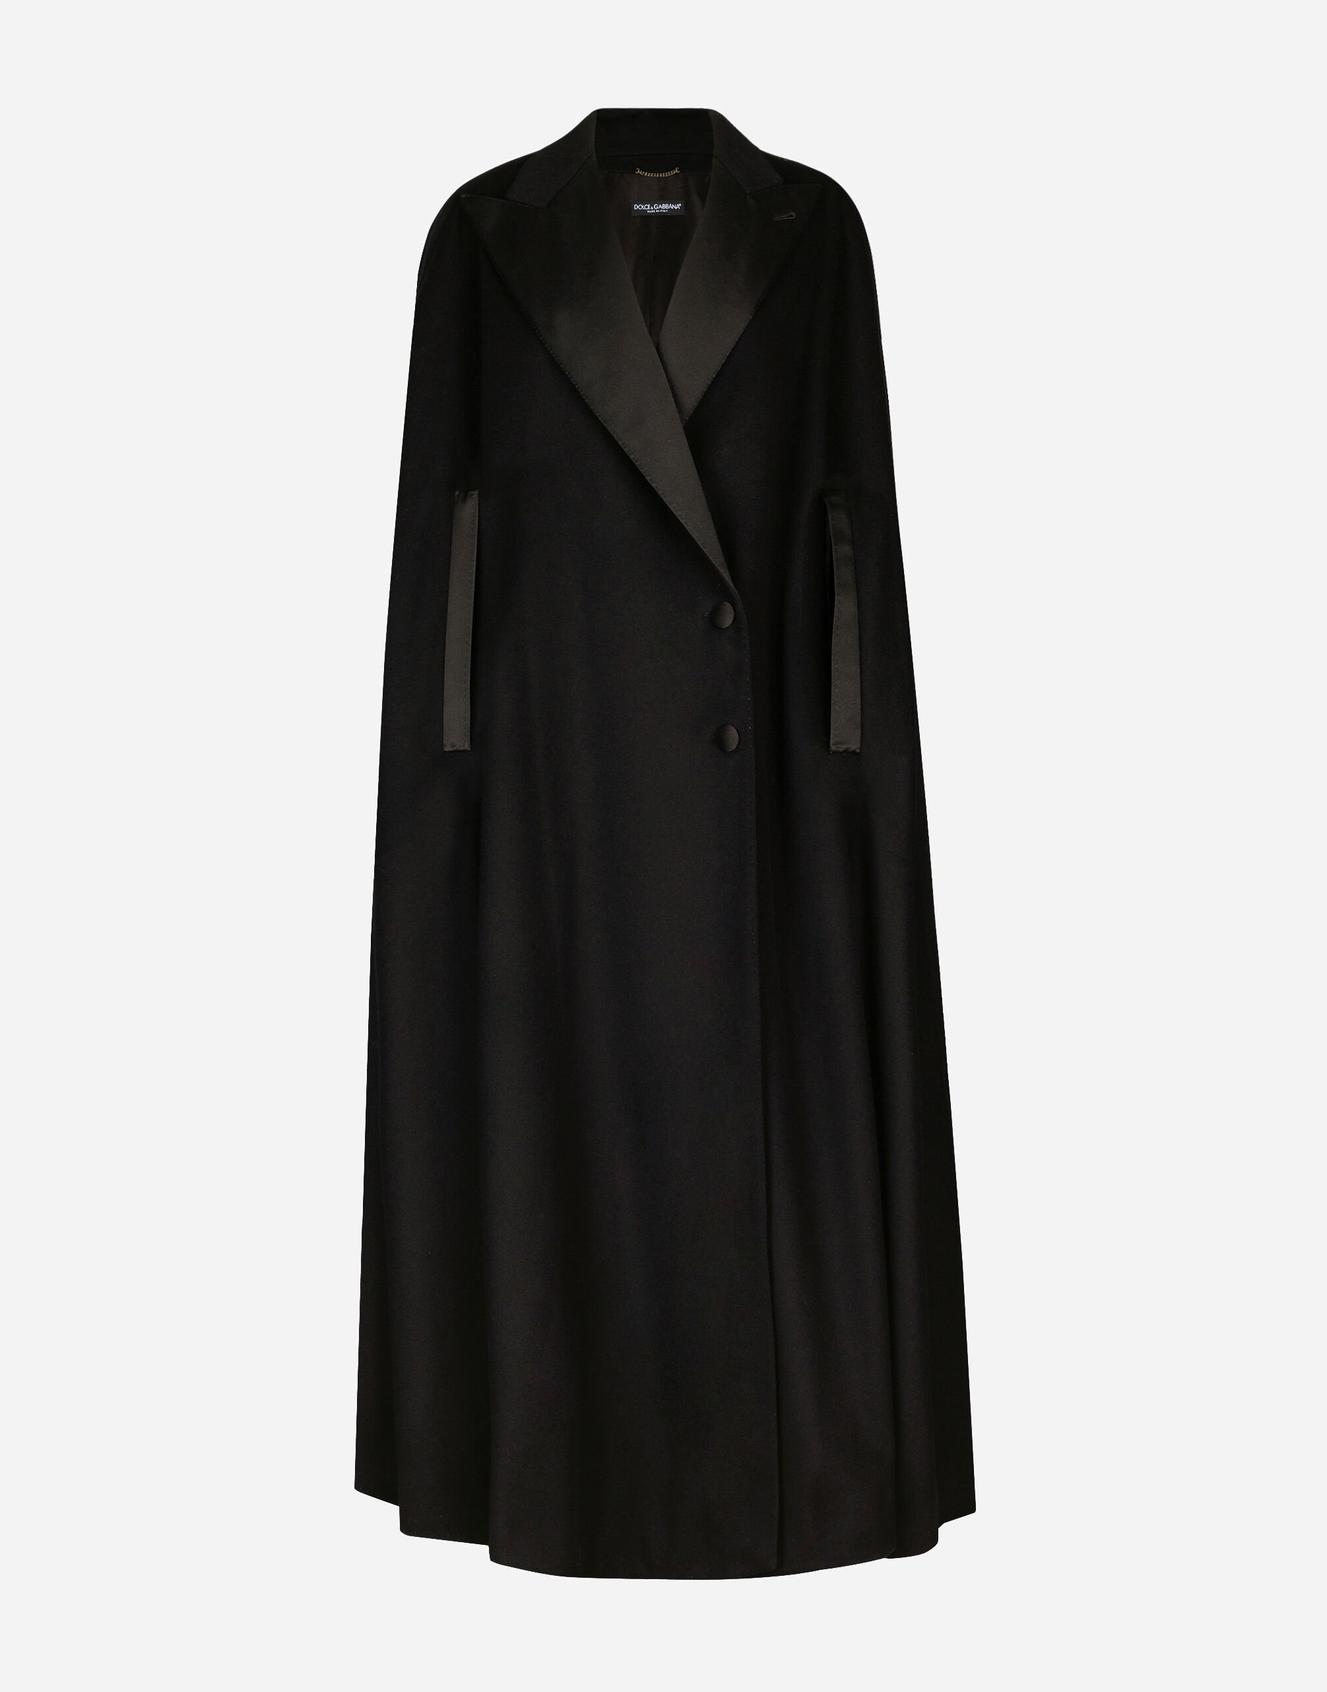 Manteau droit en laine et cachemire offre à 4950€ sur Dolce & Gabbana